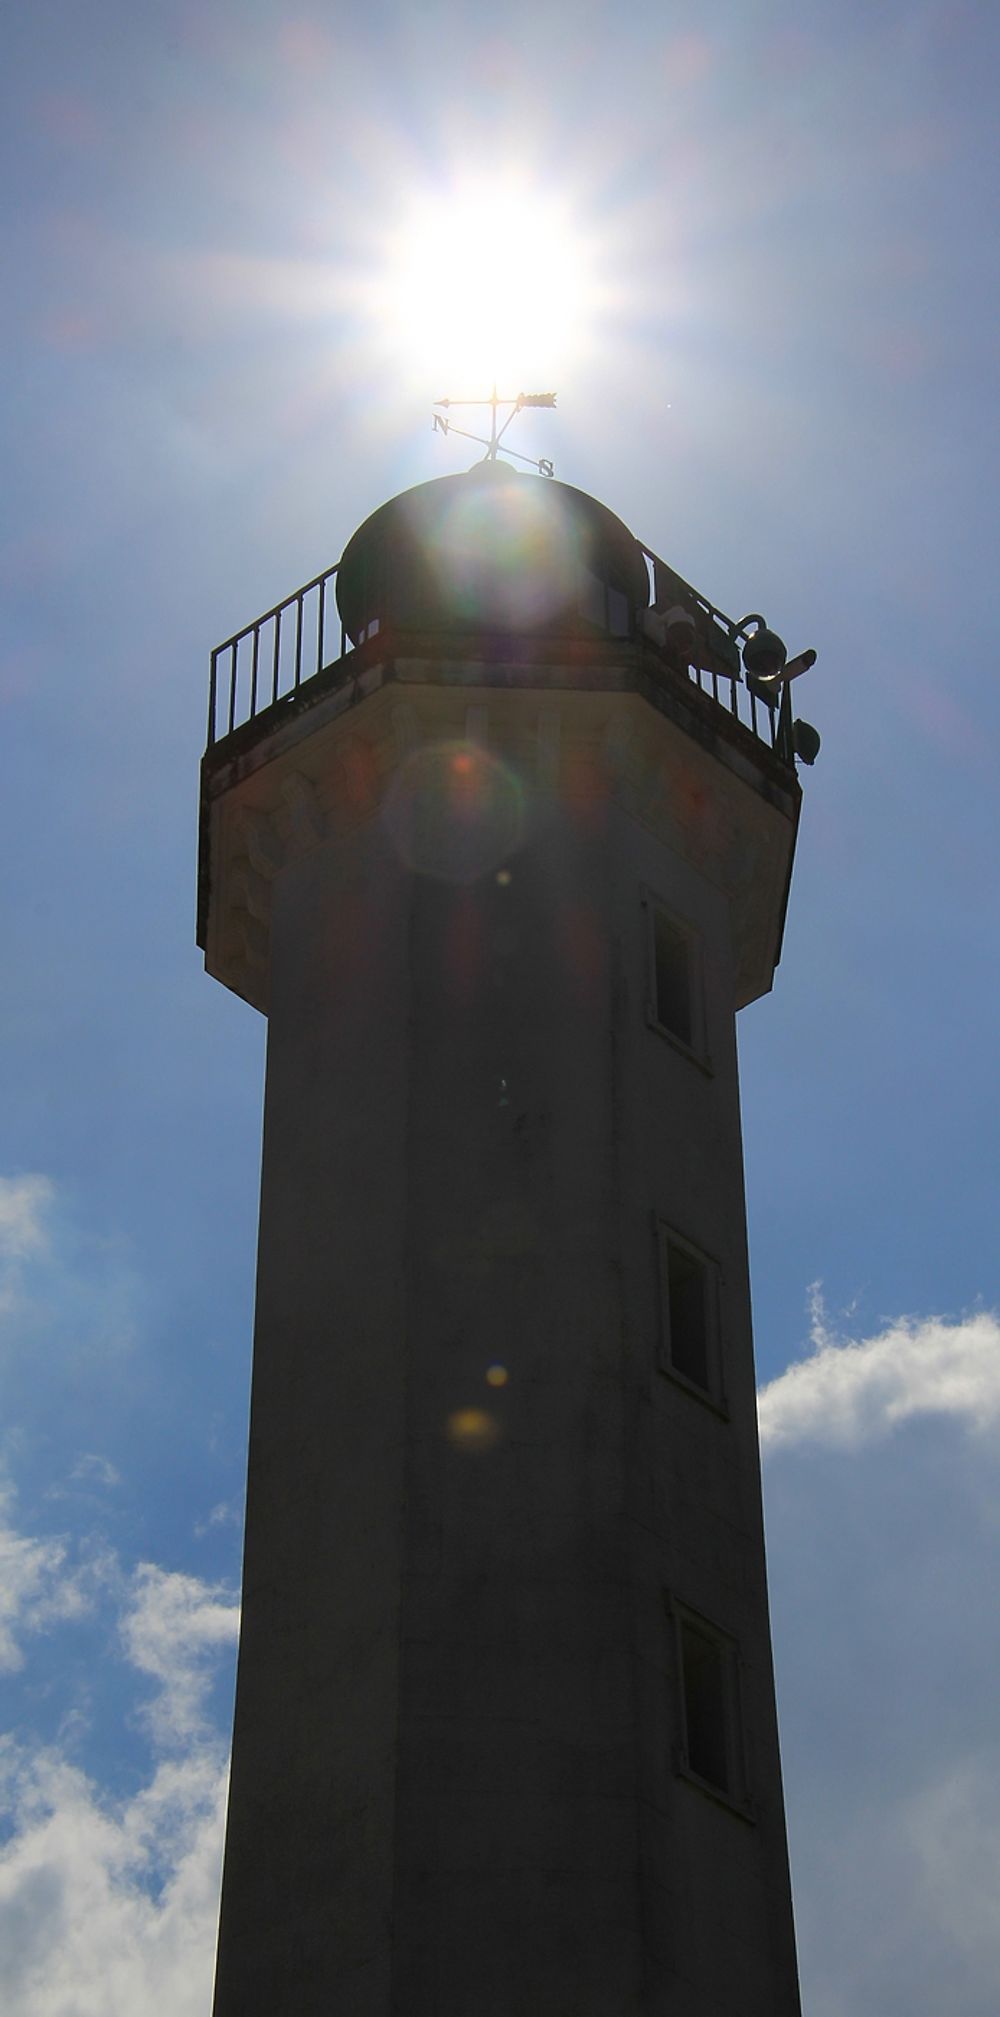 Le long de la côte de Charente-Maritime, de phares en phares … de La Rochelle à l'île de Ré jusqu'à l'île d'Aix (1ère partie) - jem